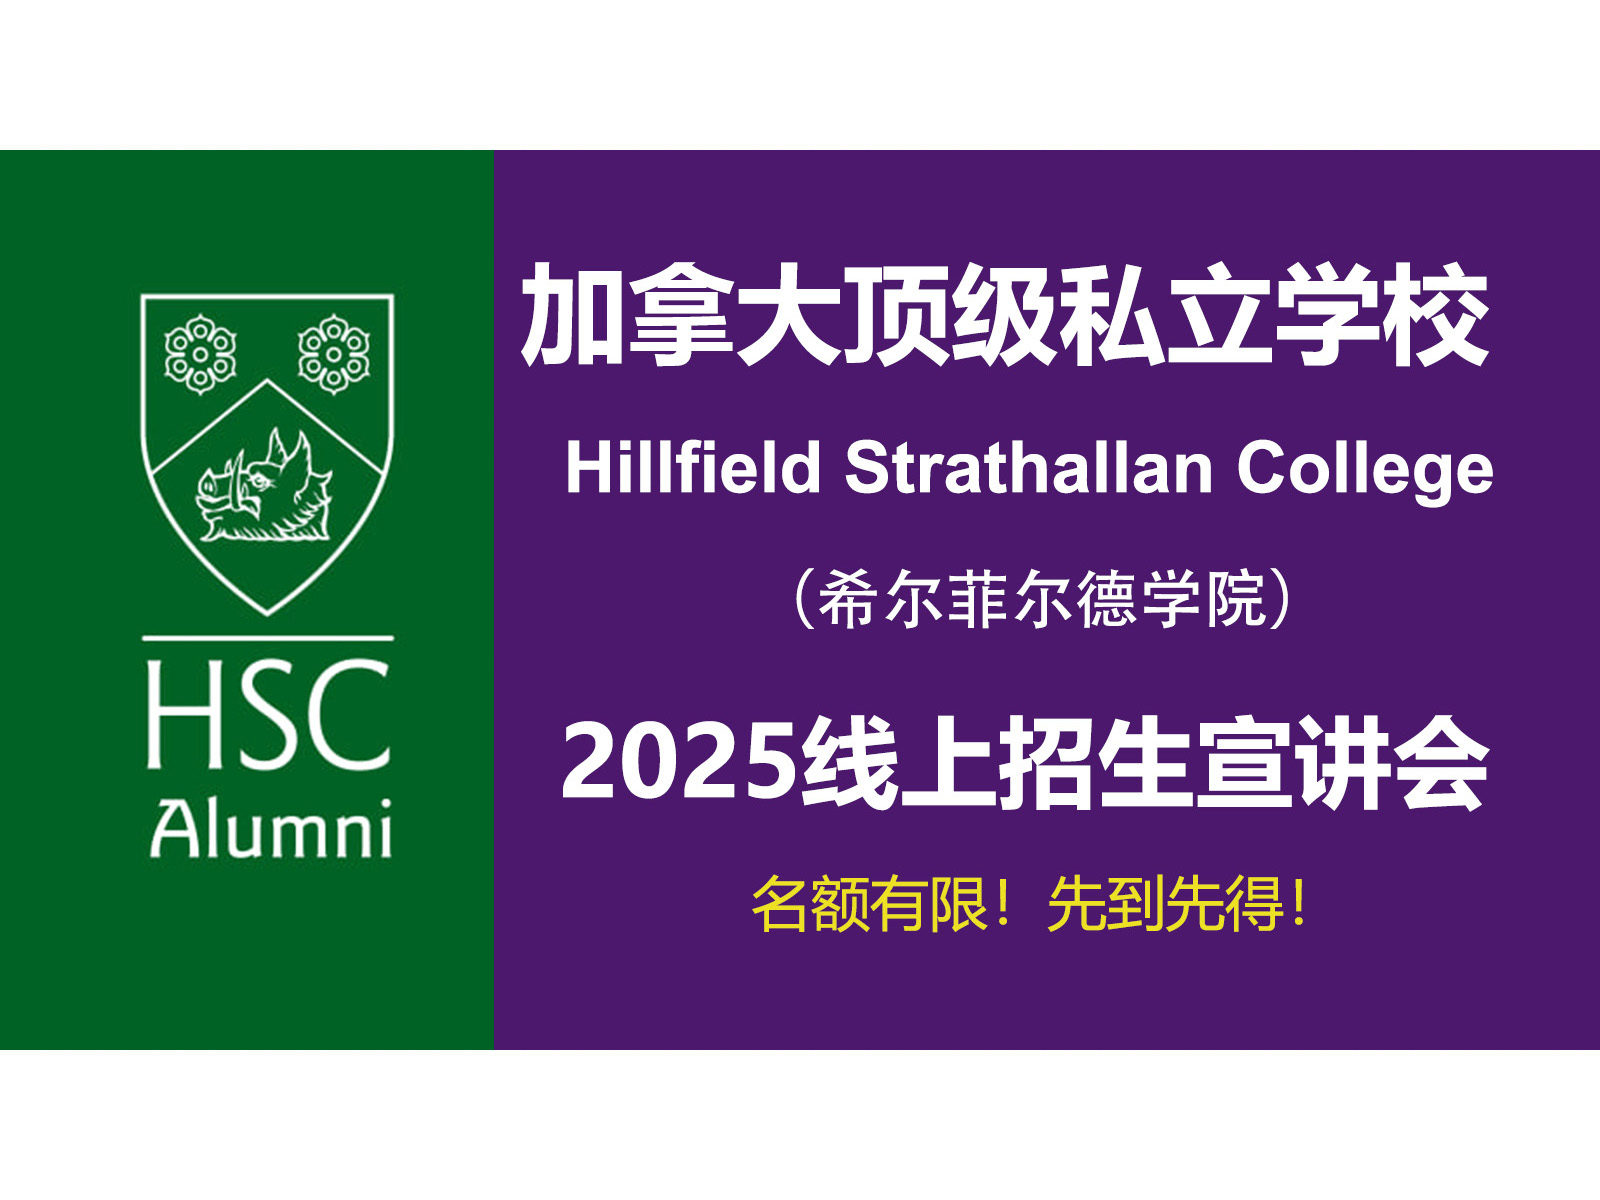 斯隆教育联合加拿大顶级走读私校Hillfield Strathallan College举办 2025年线上招生宣讲会